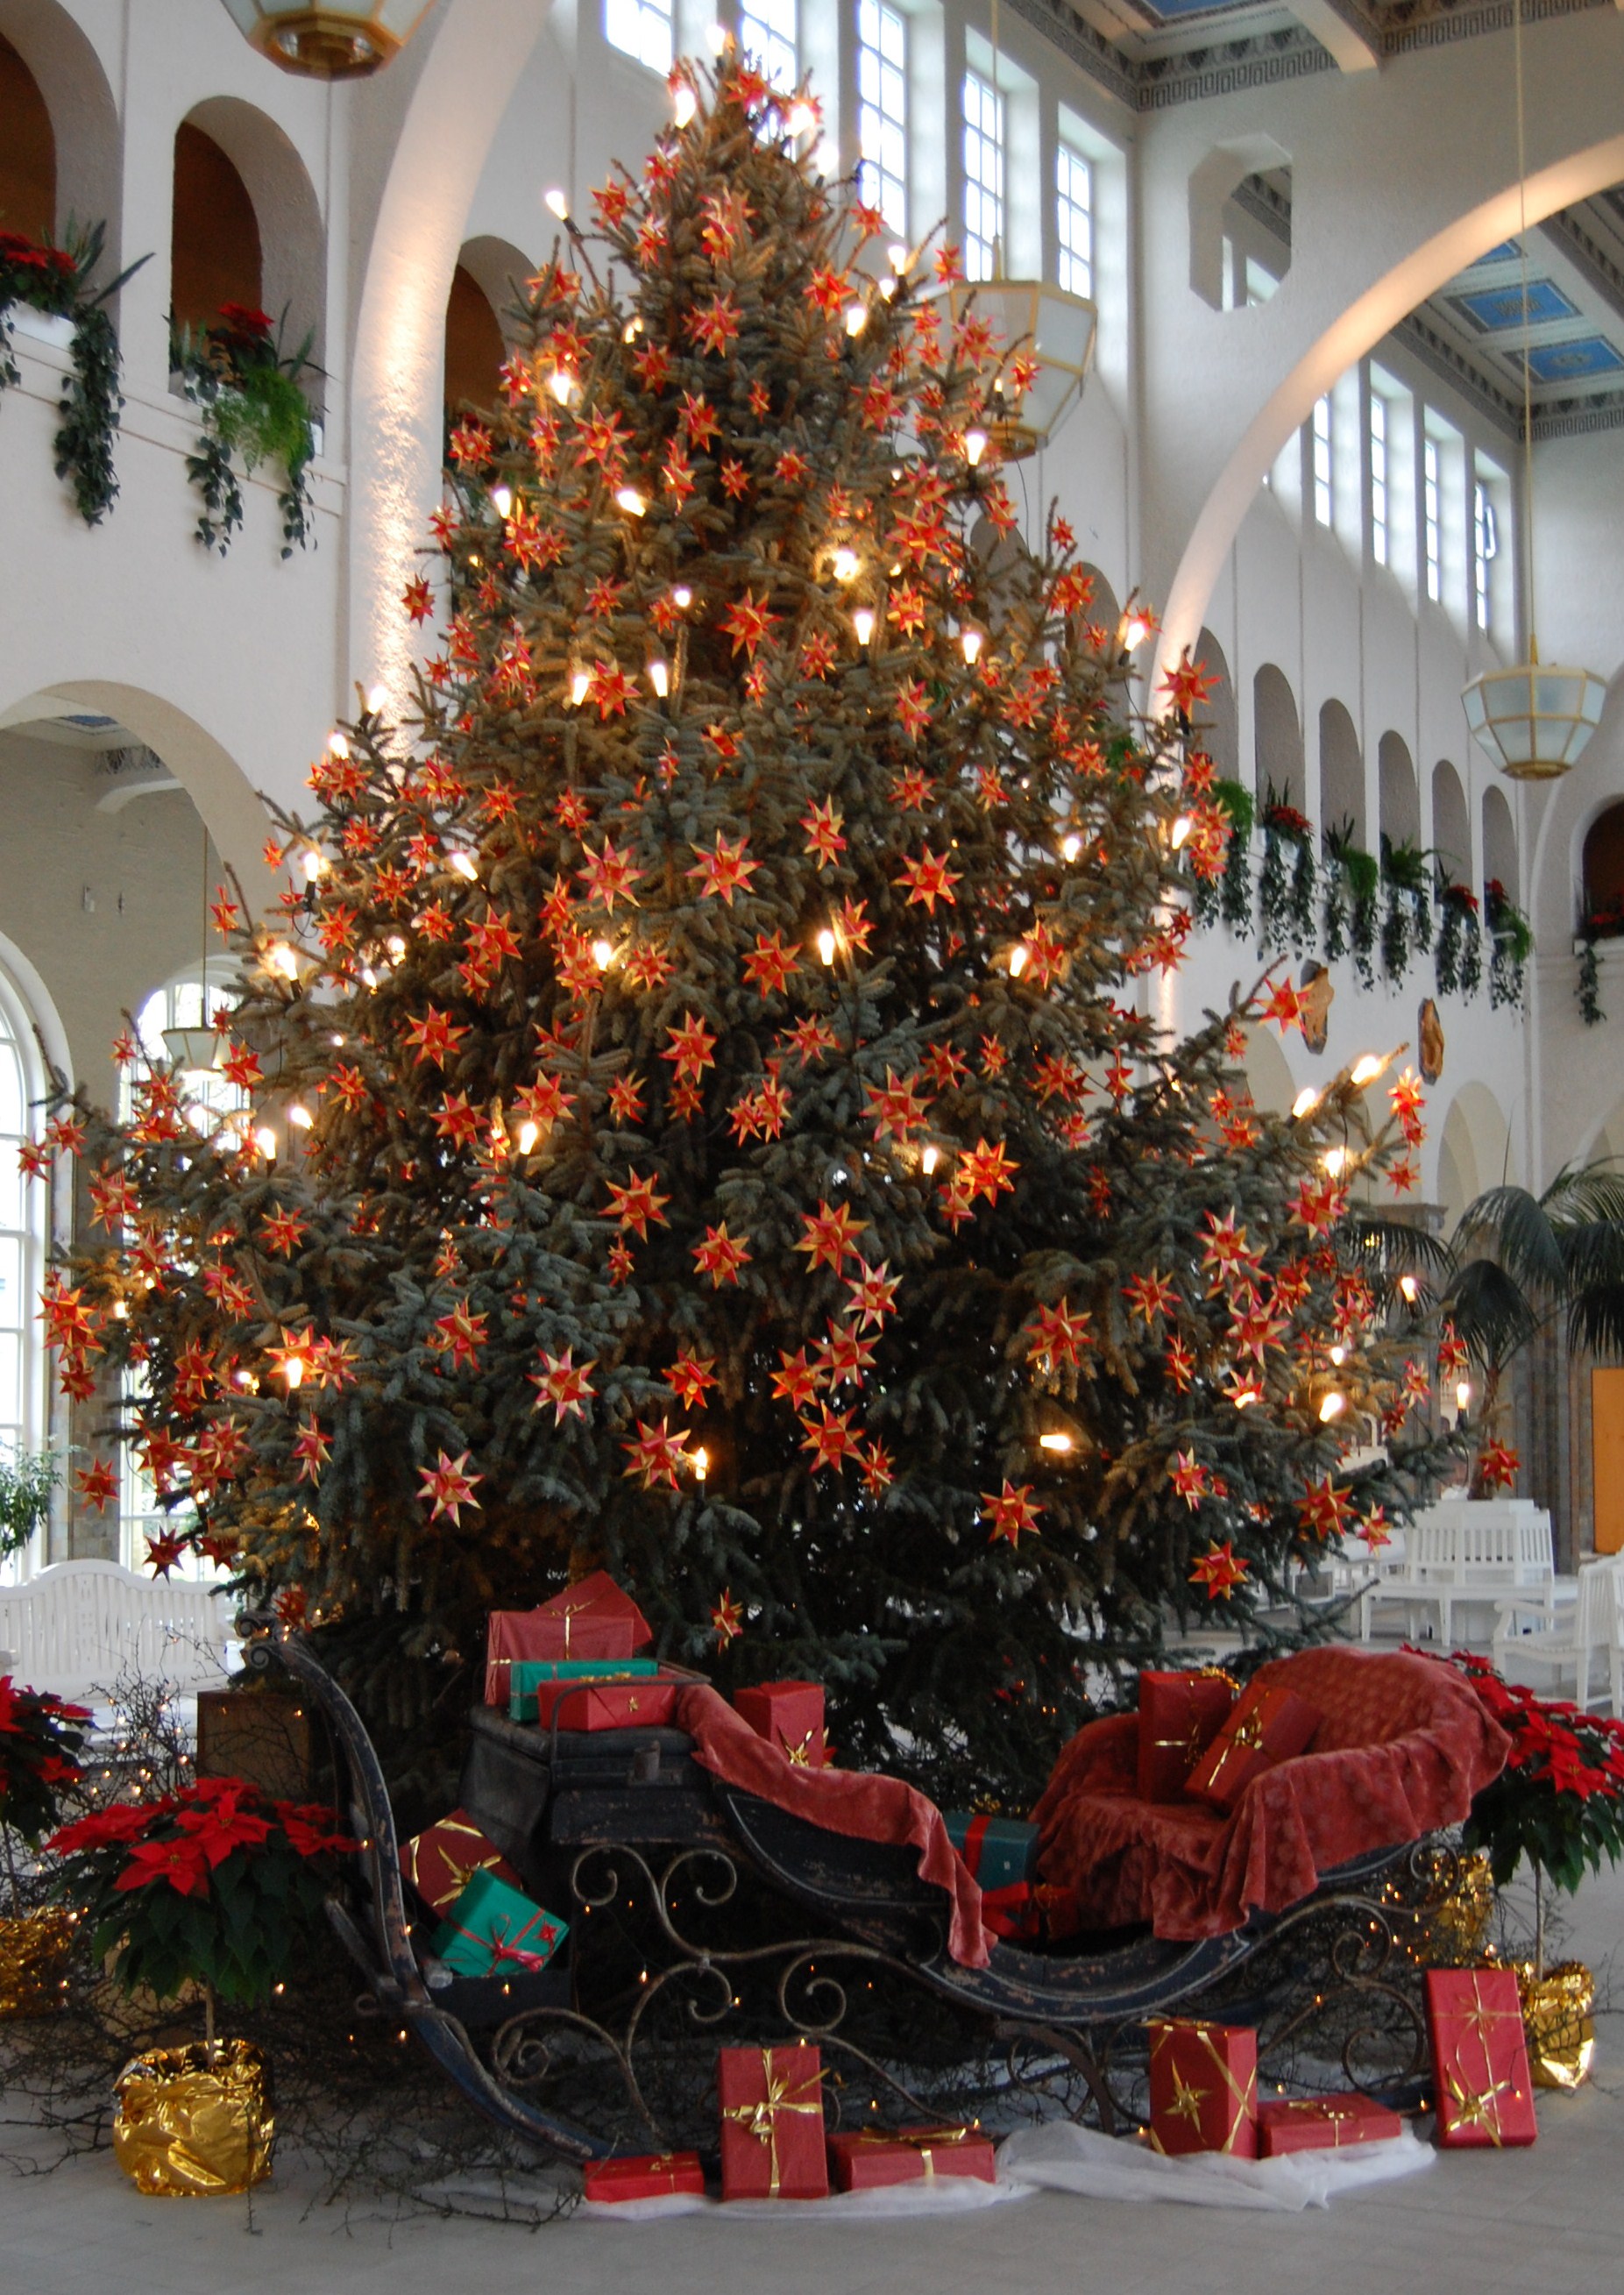 Auf dem Bild ist ein Weihnachtsbaum und eine Krippe zu sehen